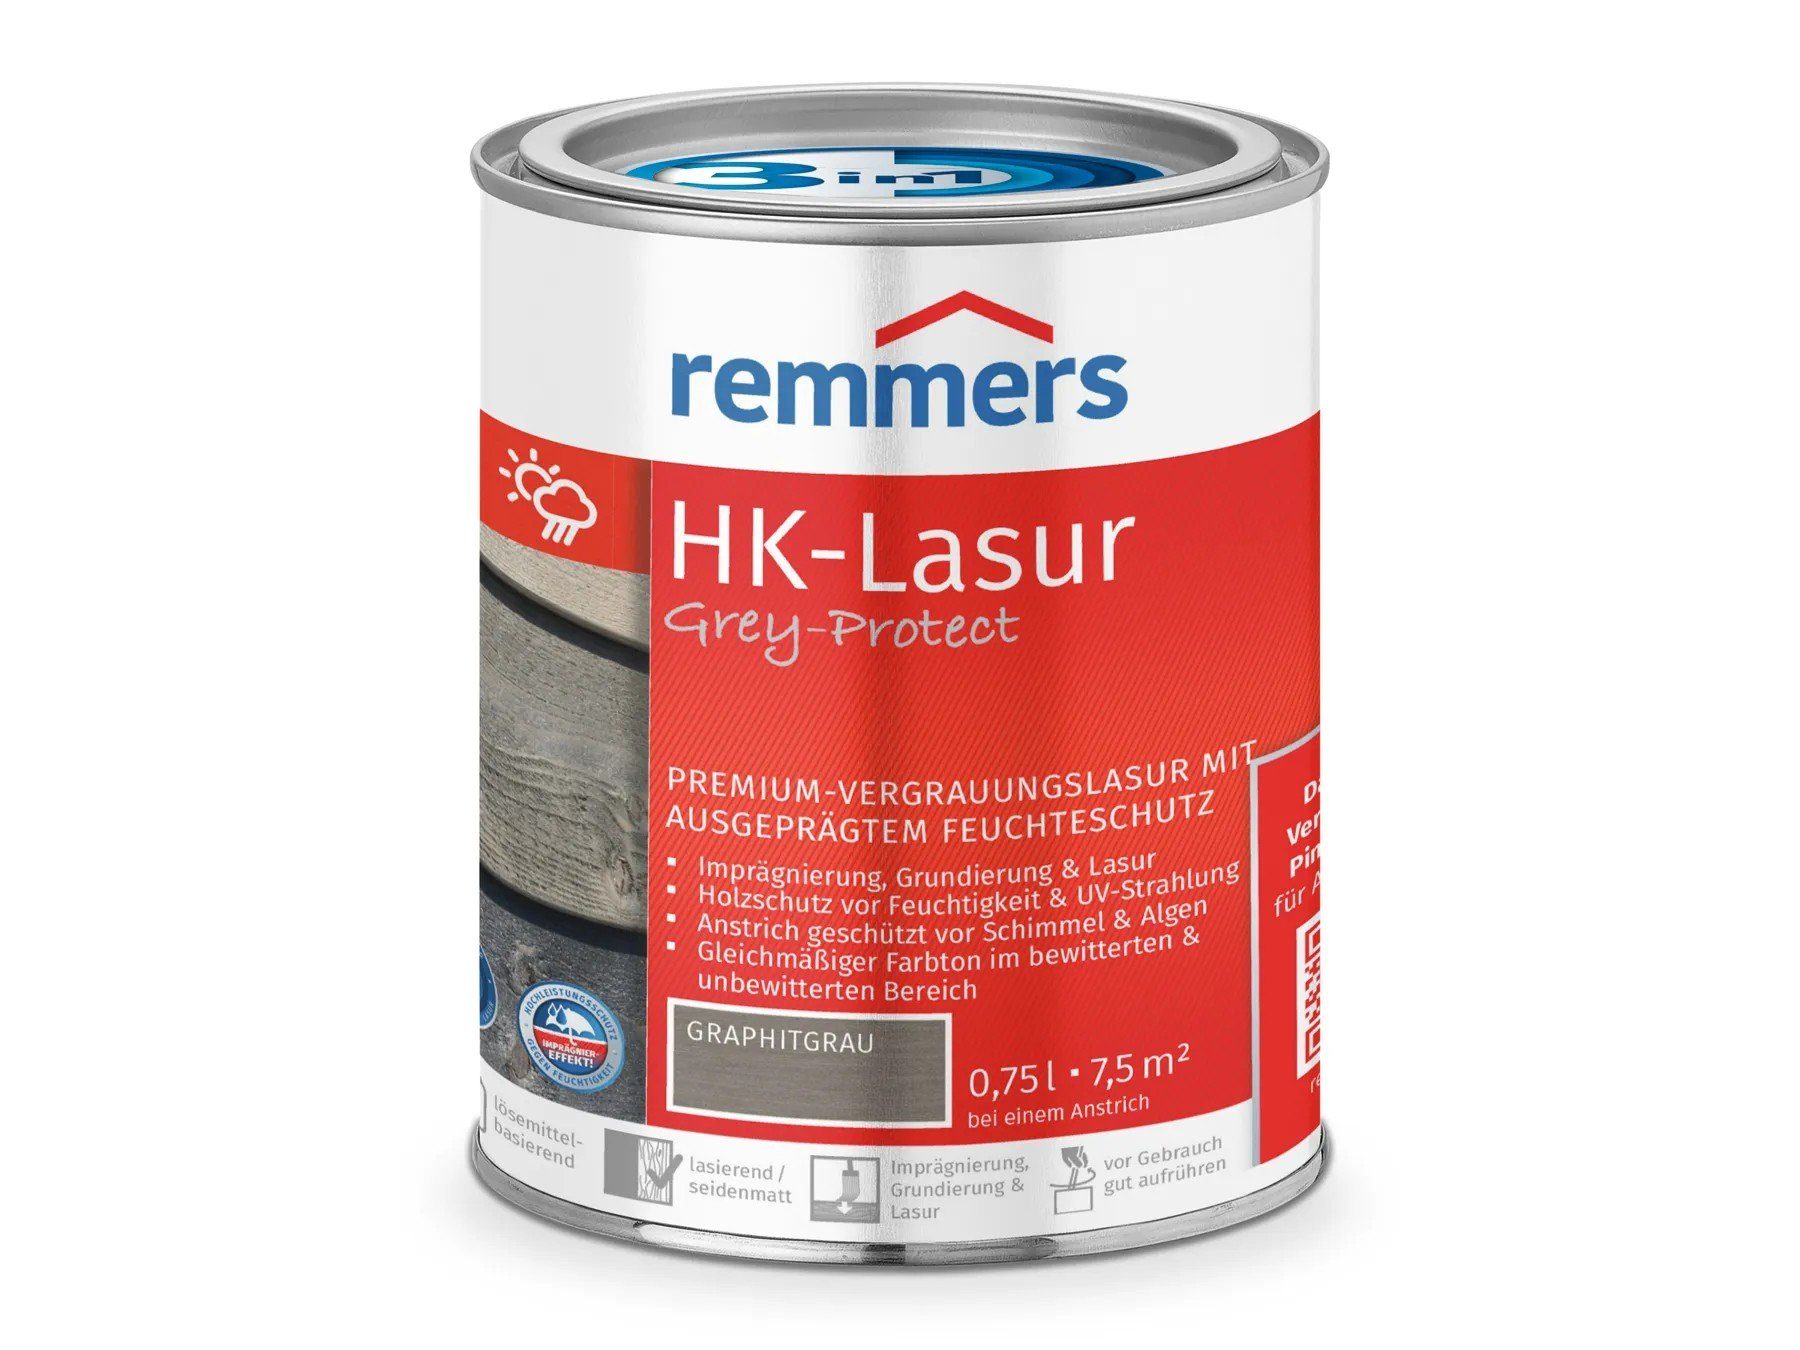 Remmers Holzschutzlasur HK-Lasur 3in1 Grey-Protect graphitgrau (FT-25416)